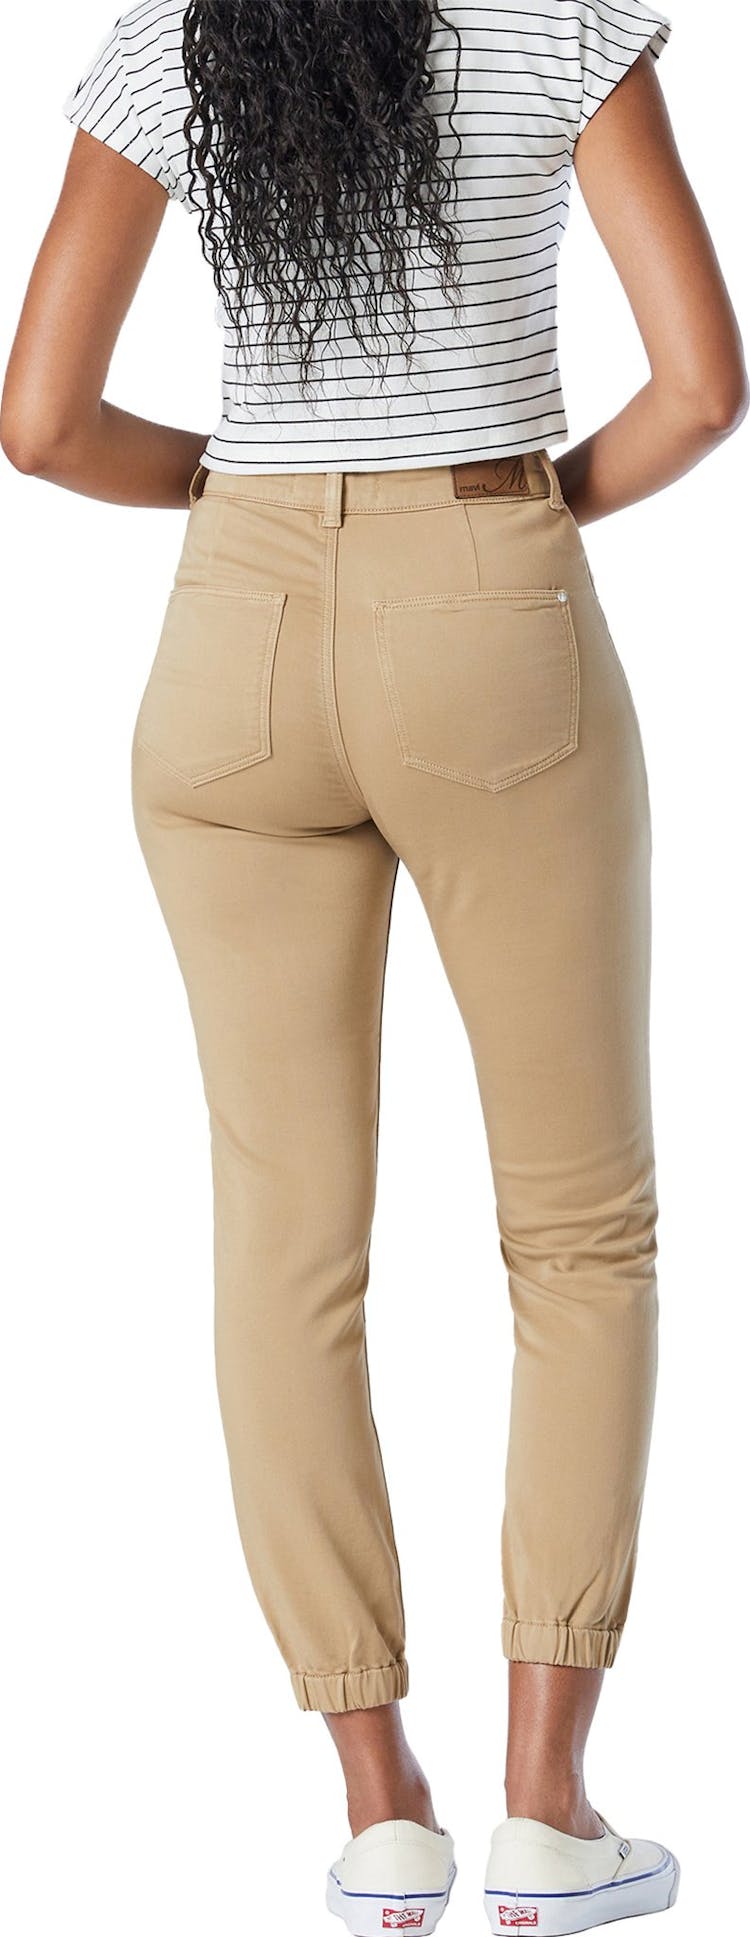 Numéro de l'image de la galerie de produits 2 pour le produit Pantalon jogger étroit Cournstalk Casual Comfort Anna - Femme